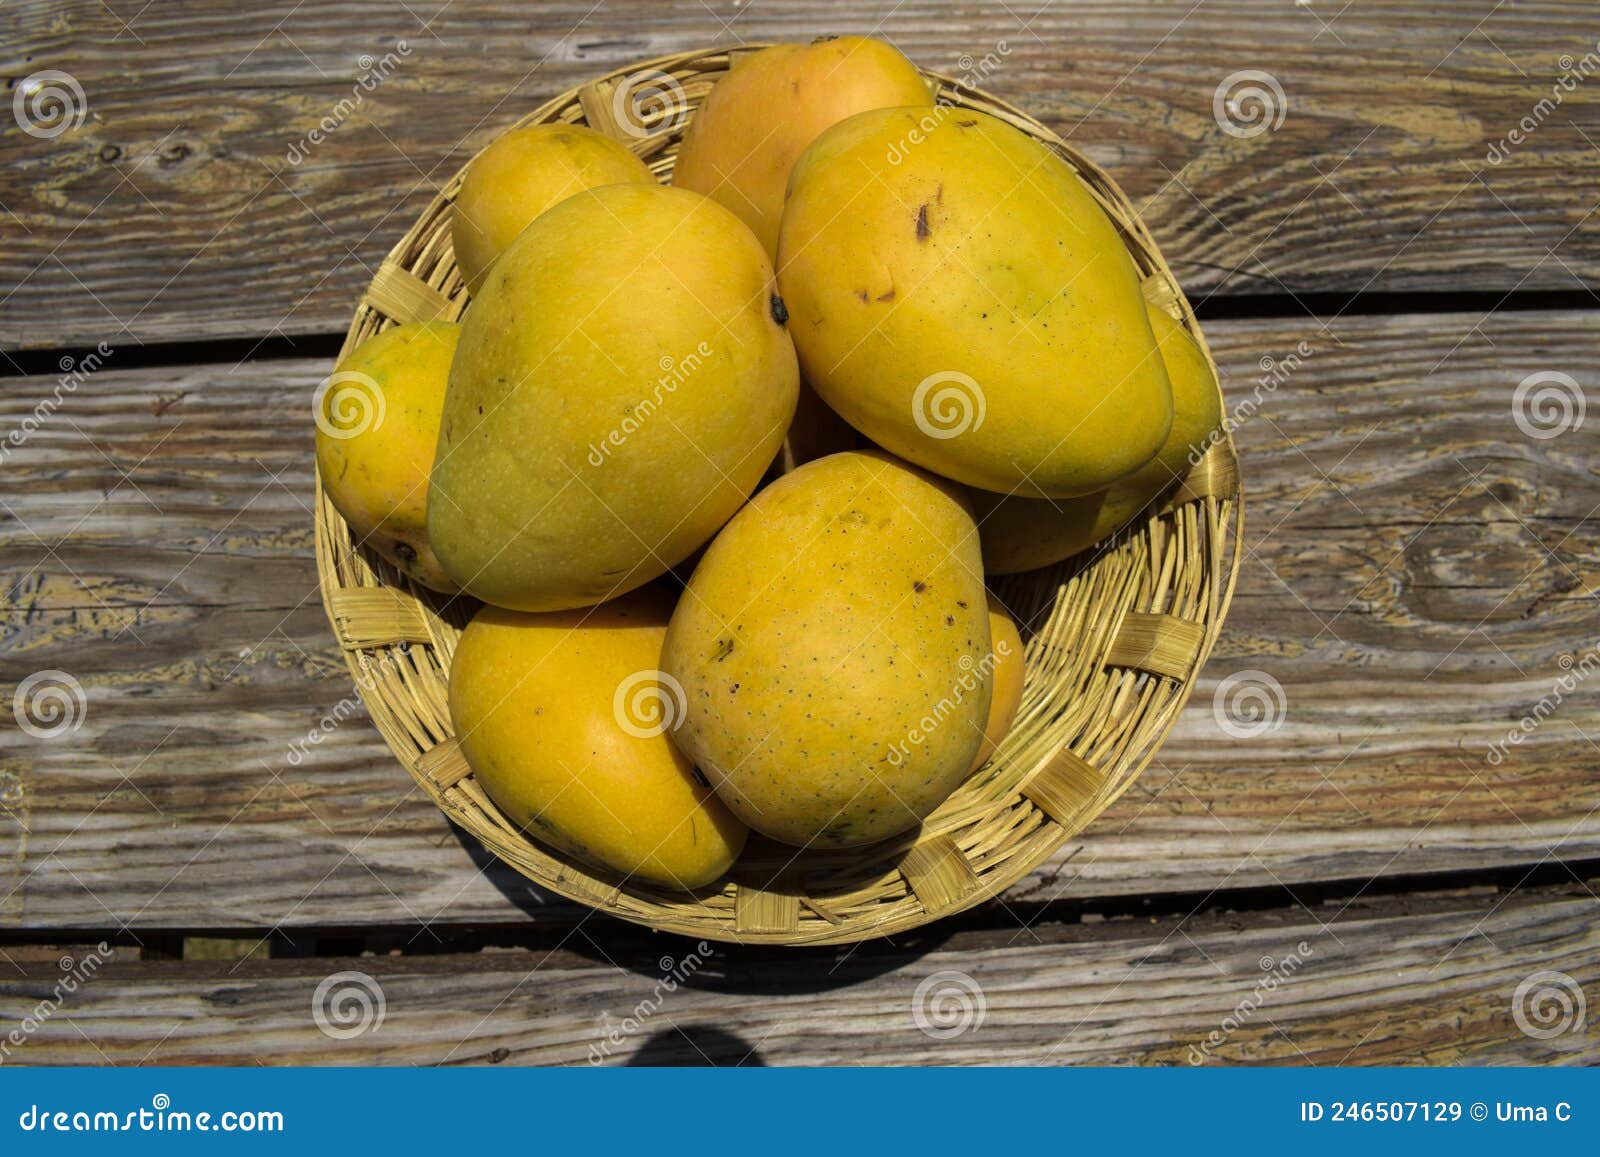 hawt large mangos aged lady